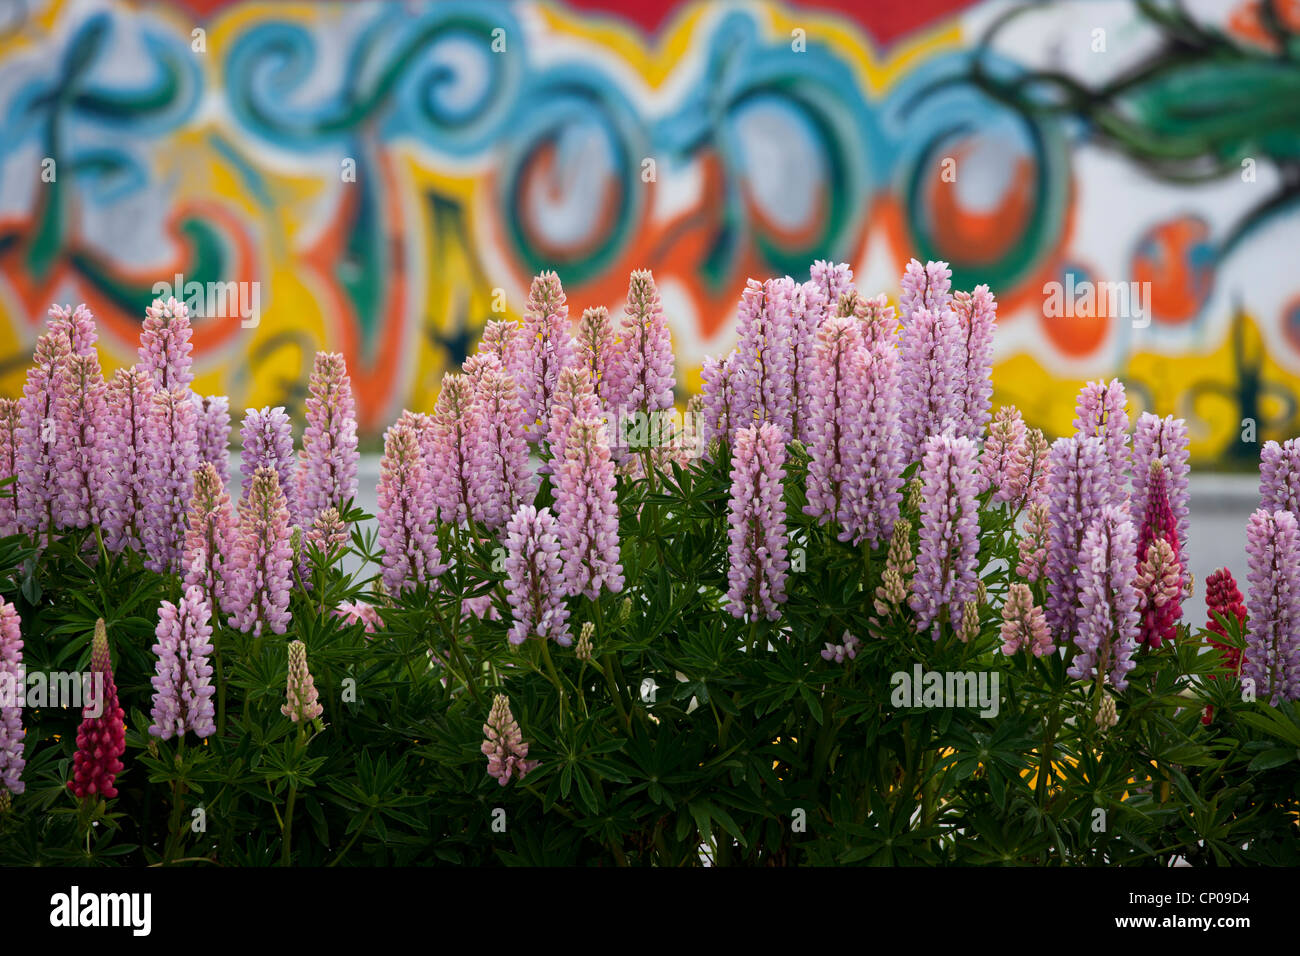 Fiori di lupino in parte anteriore del coloratissimo graffito in Ushuaia, Tierra del Fuego, Argentina. Foto Stock